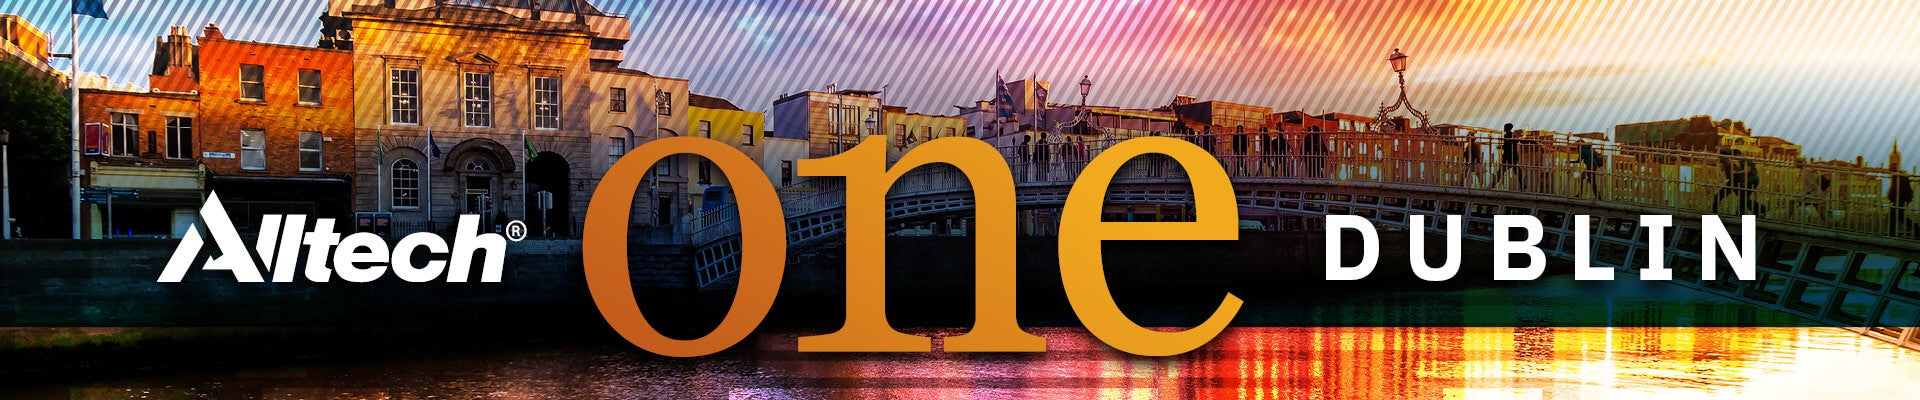 Alltech-ONE-World-Tour-Dublin-Web-Banner